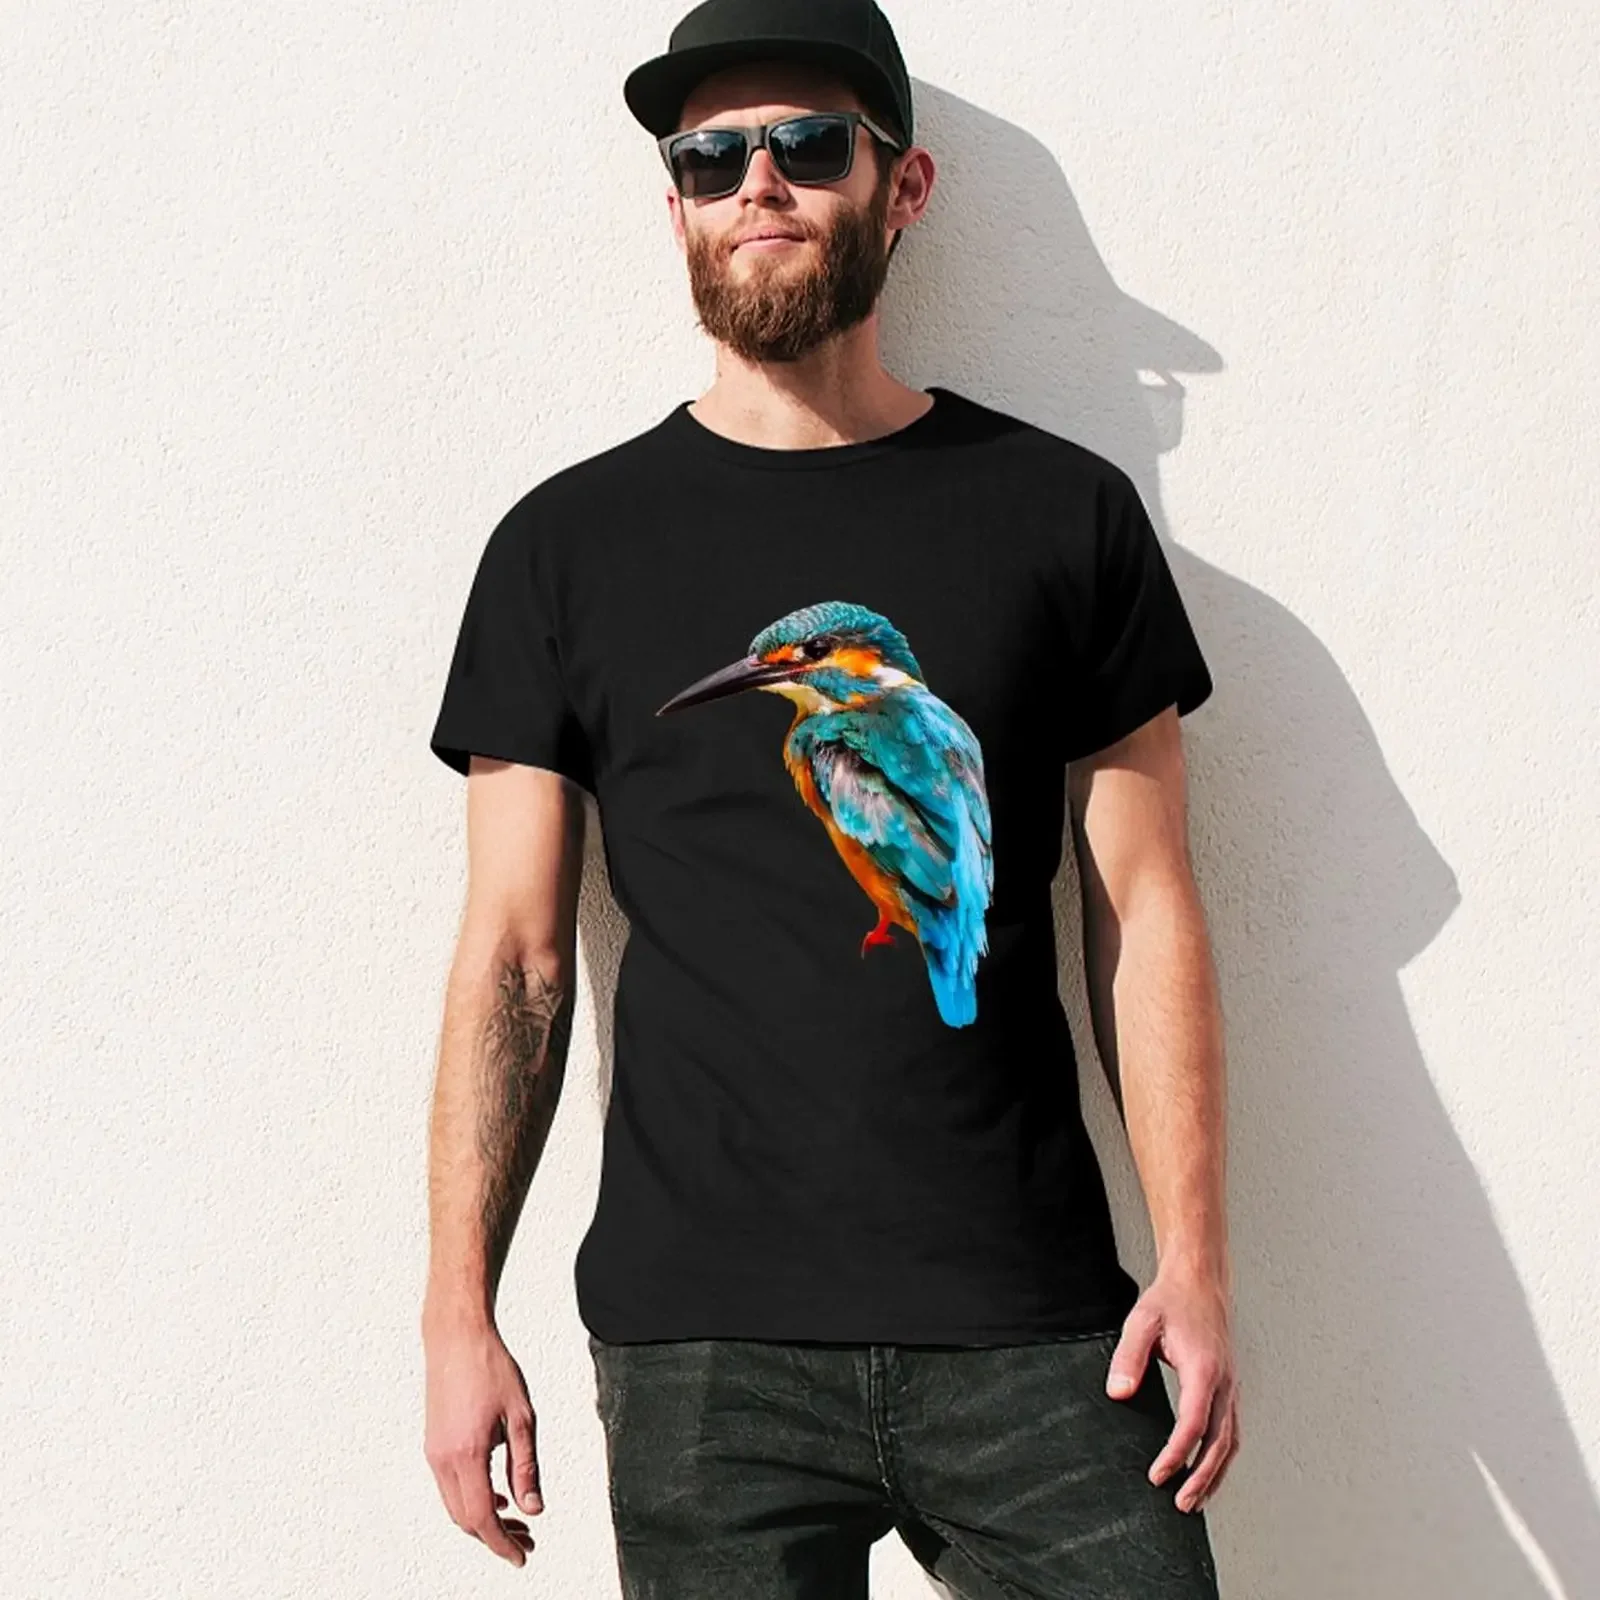 Kingfisher-Camiseta con estampado de animales para hombre, tops bonitos, camisetas informales con estilo